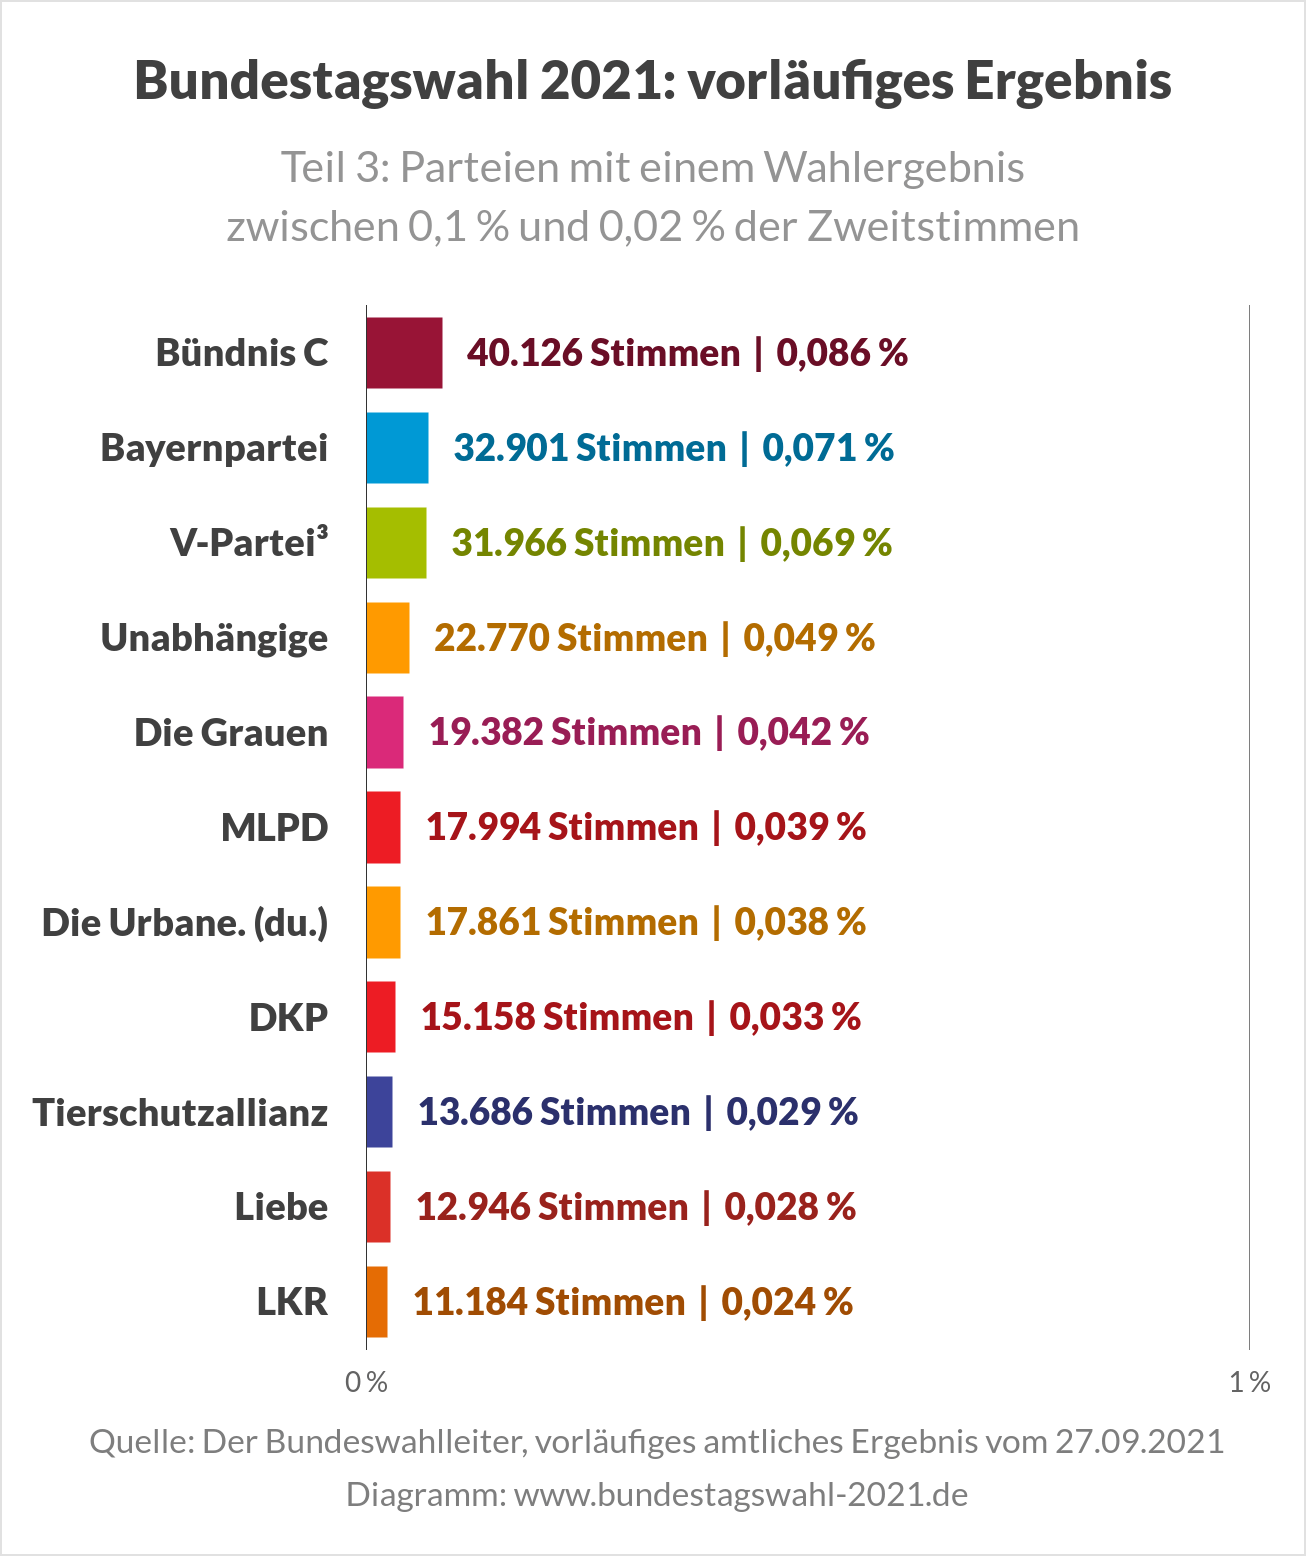 Bundestagswahl 2021 - Ergebnis Teil 3 - Wahlergebnis Kleinparteien (u. a. Bündnis C, Bayernpartei, V-Partei3)